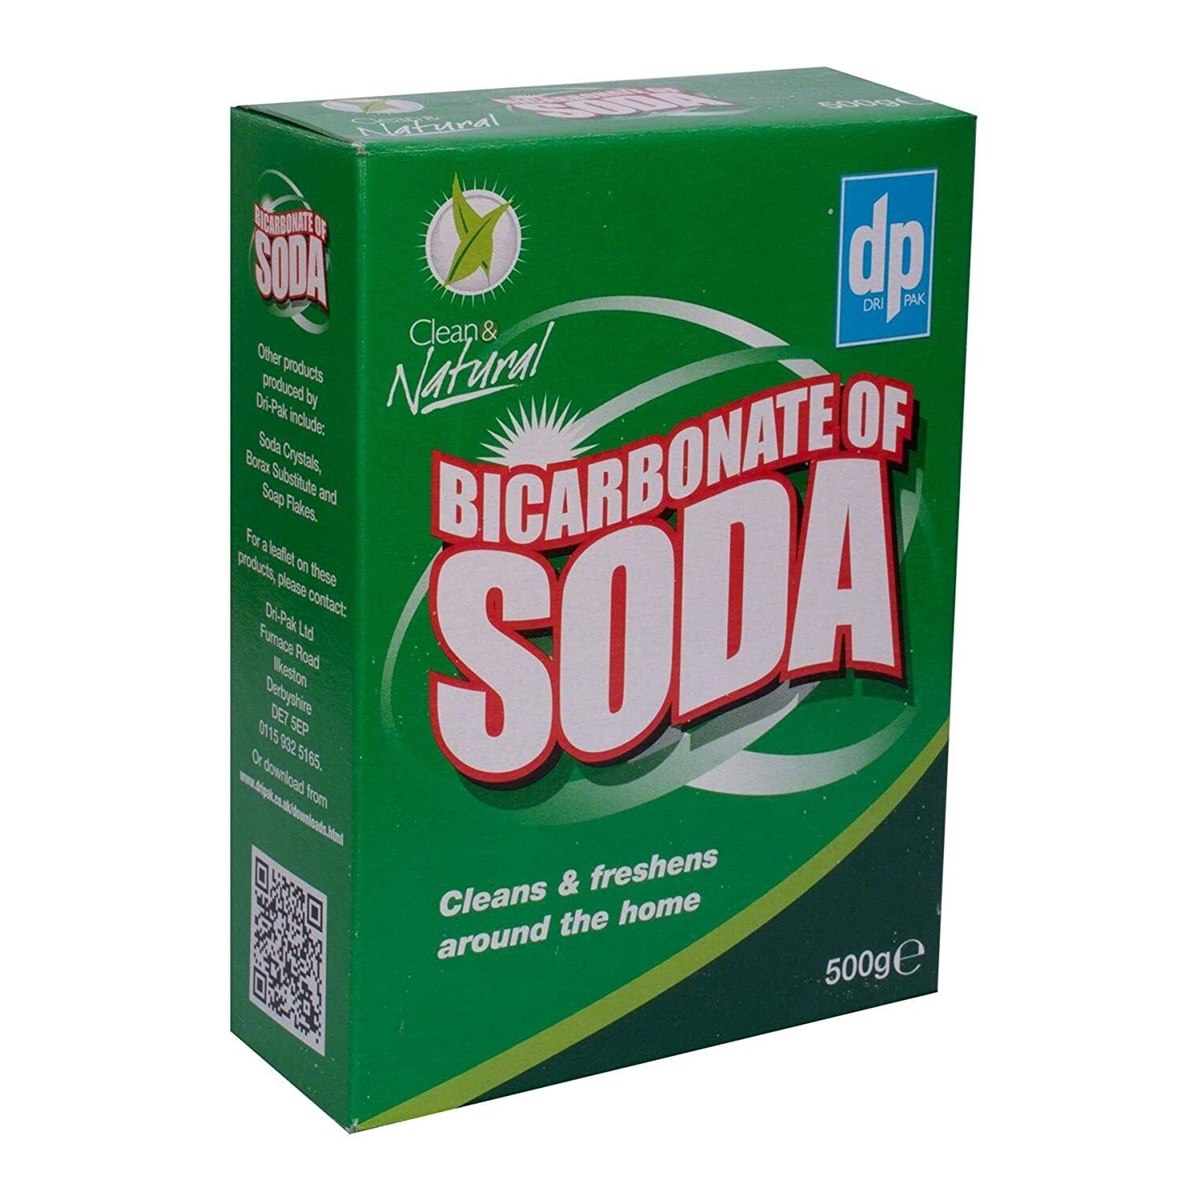 Dri Pak Clean and Natural Bicarbonate of Soda 500g